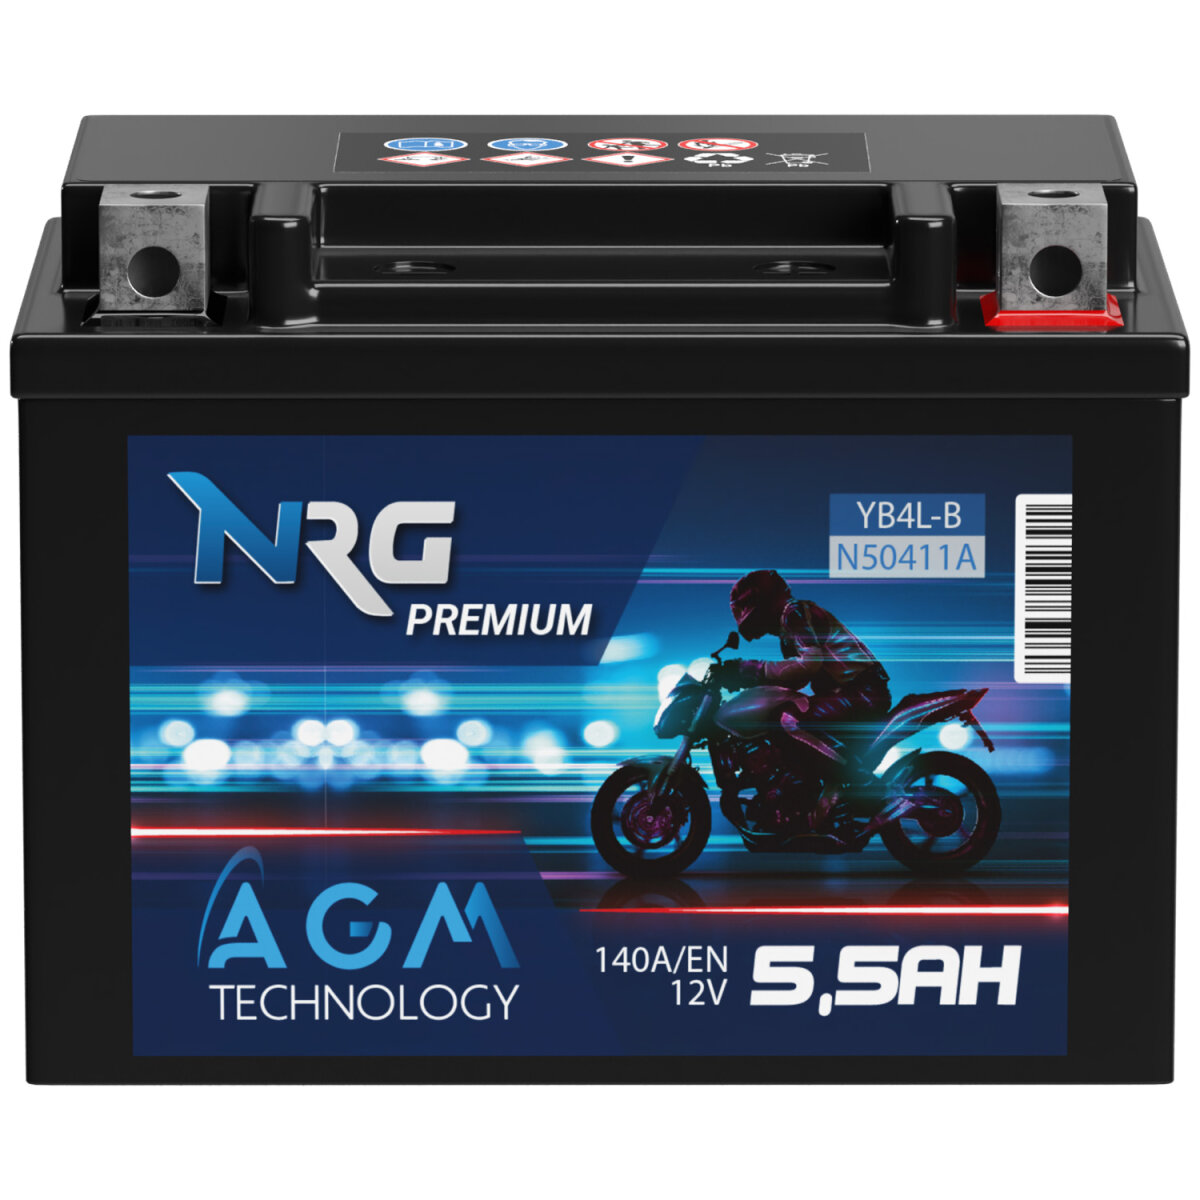 NRG AGM Motorradbatterie YB4L-B 5,5Ah 12V, 18,88 €